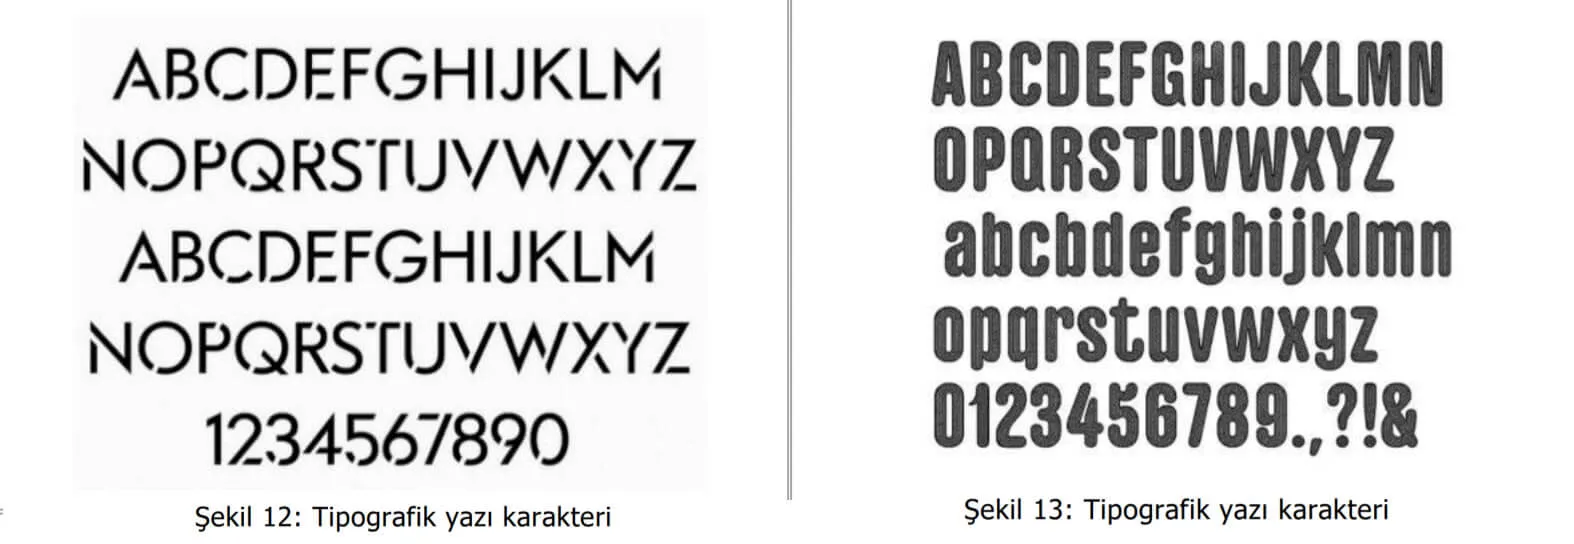 tipografik yazı karakter örnekleri-denizli marka tescil